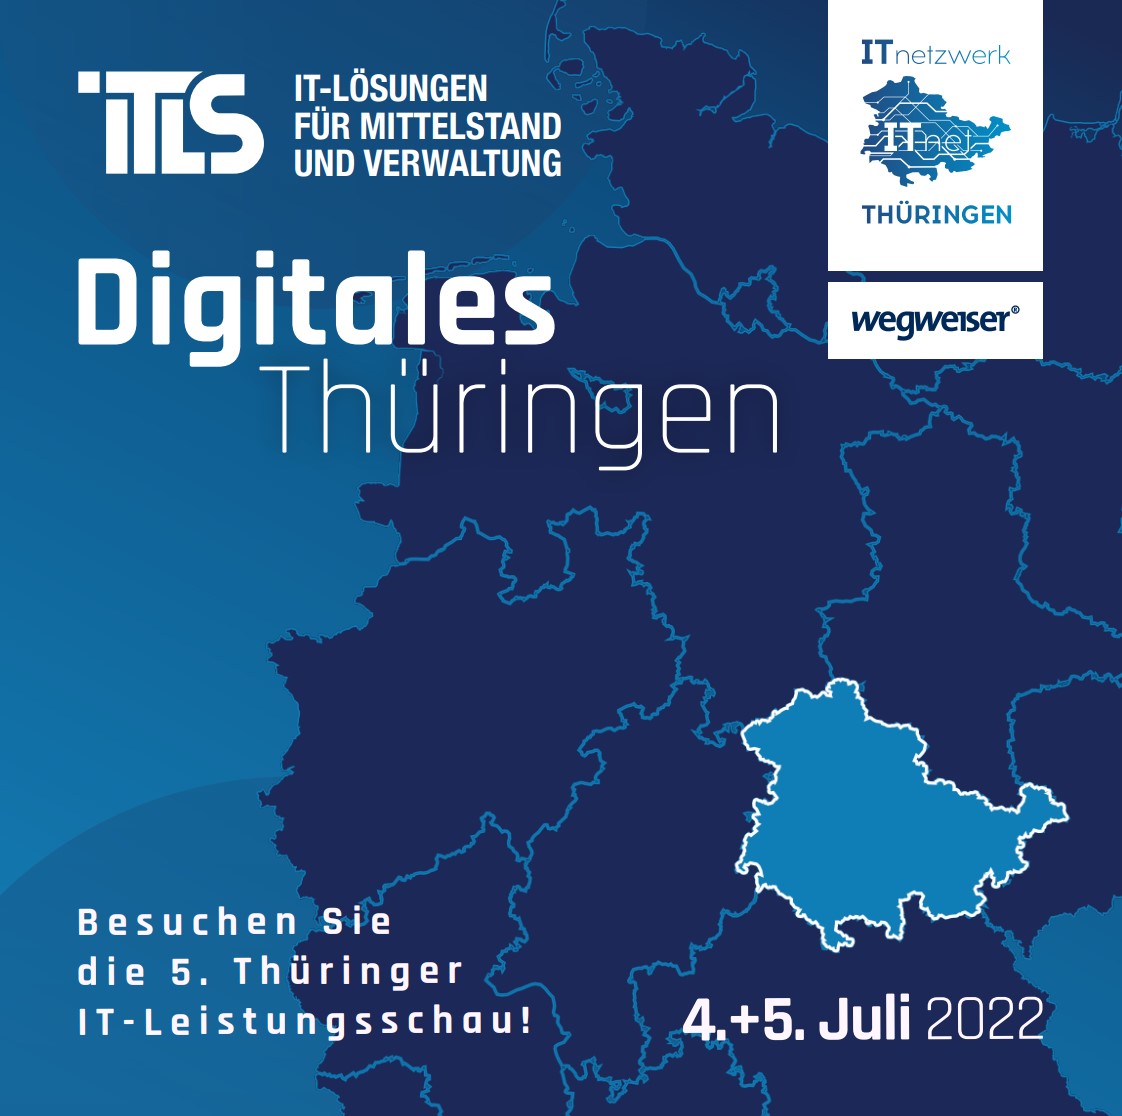 5. ITLS Digitales Thüringen 2022